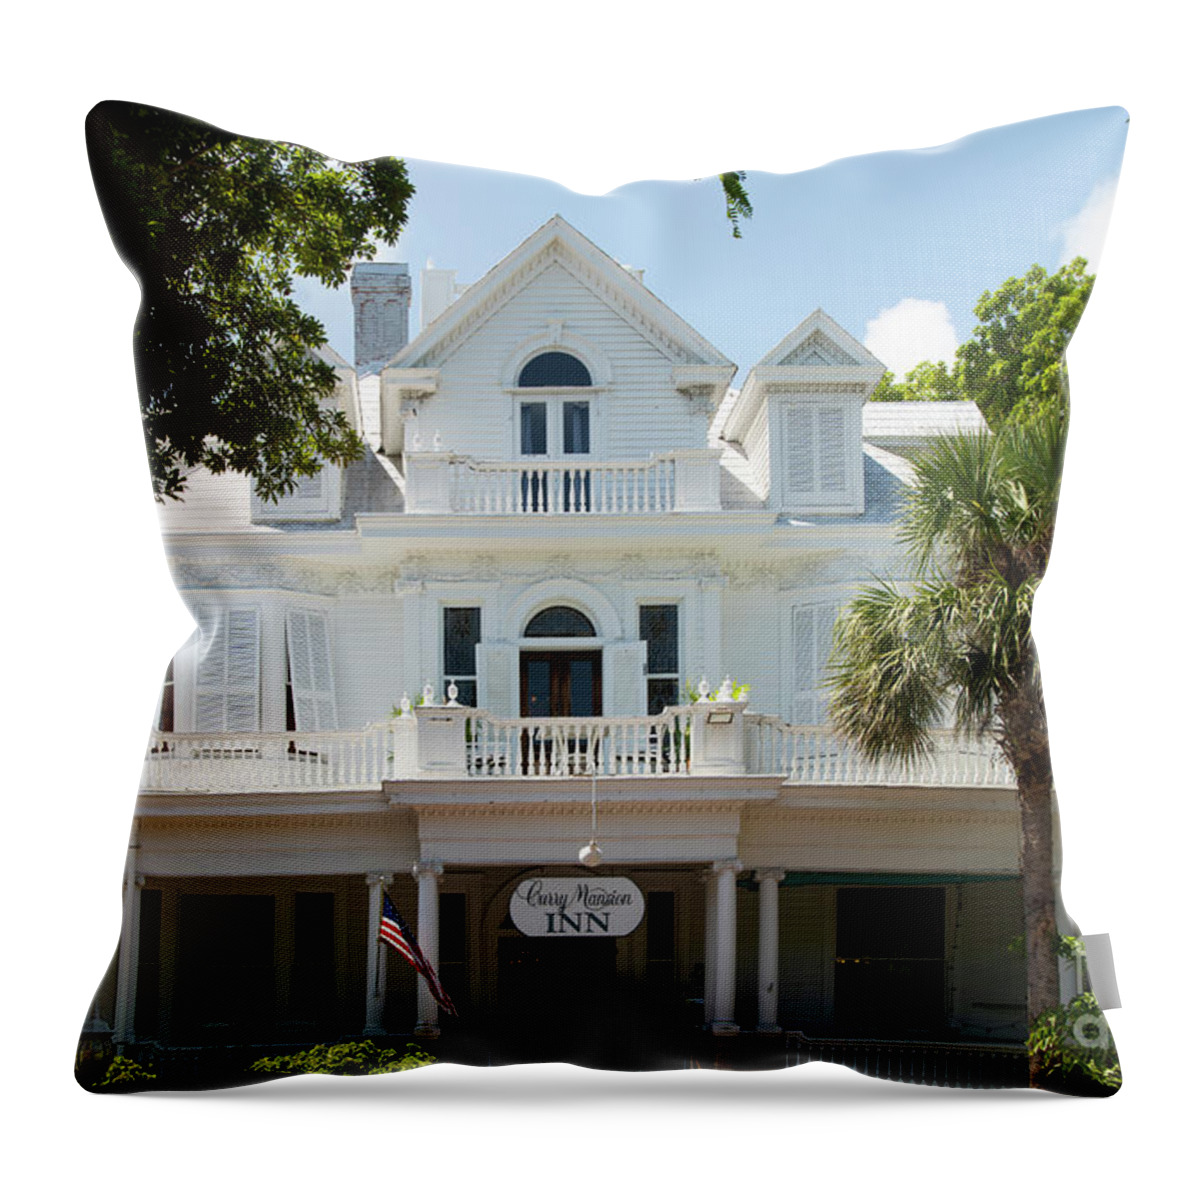 Wayne Moran Photograpy Throw Pillow featuring the photograph Milton W Curry House Key West Florida by Wayne Moran